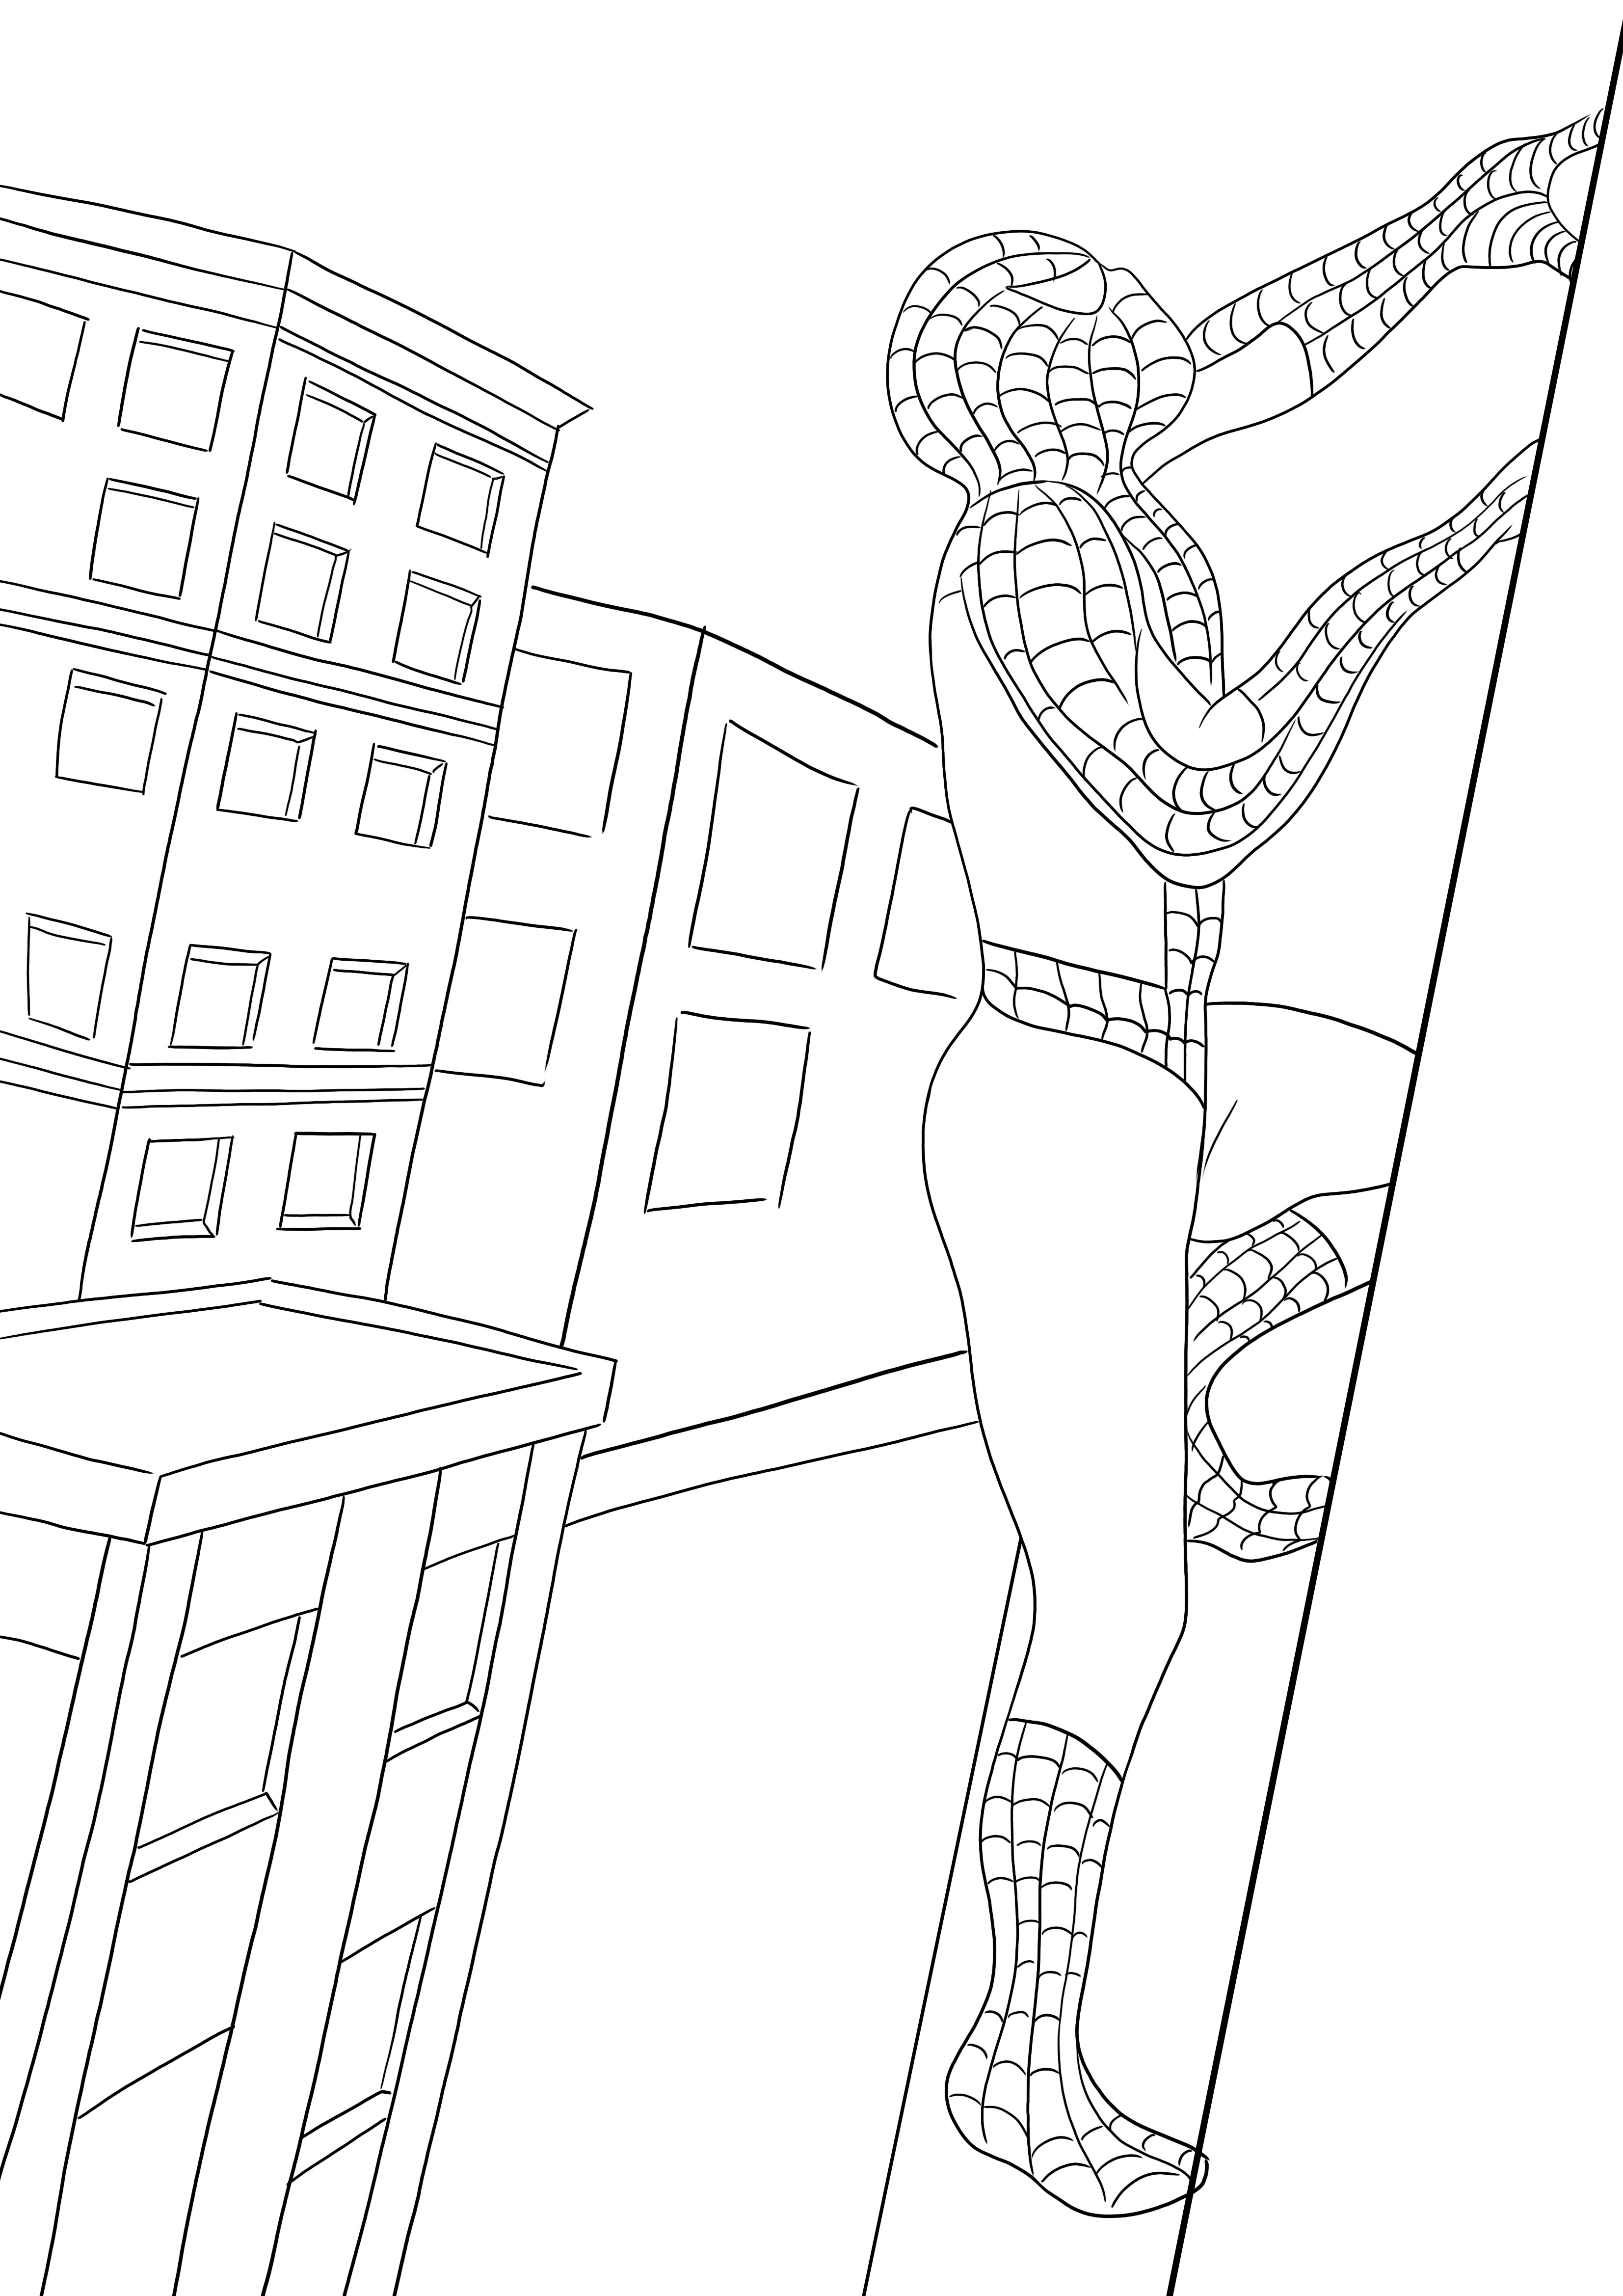 Un imprimible gratuito de Spiderman escalando el edificio: los niños pueden colorearlo fácilmente